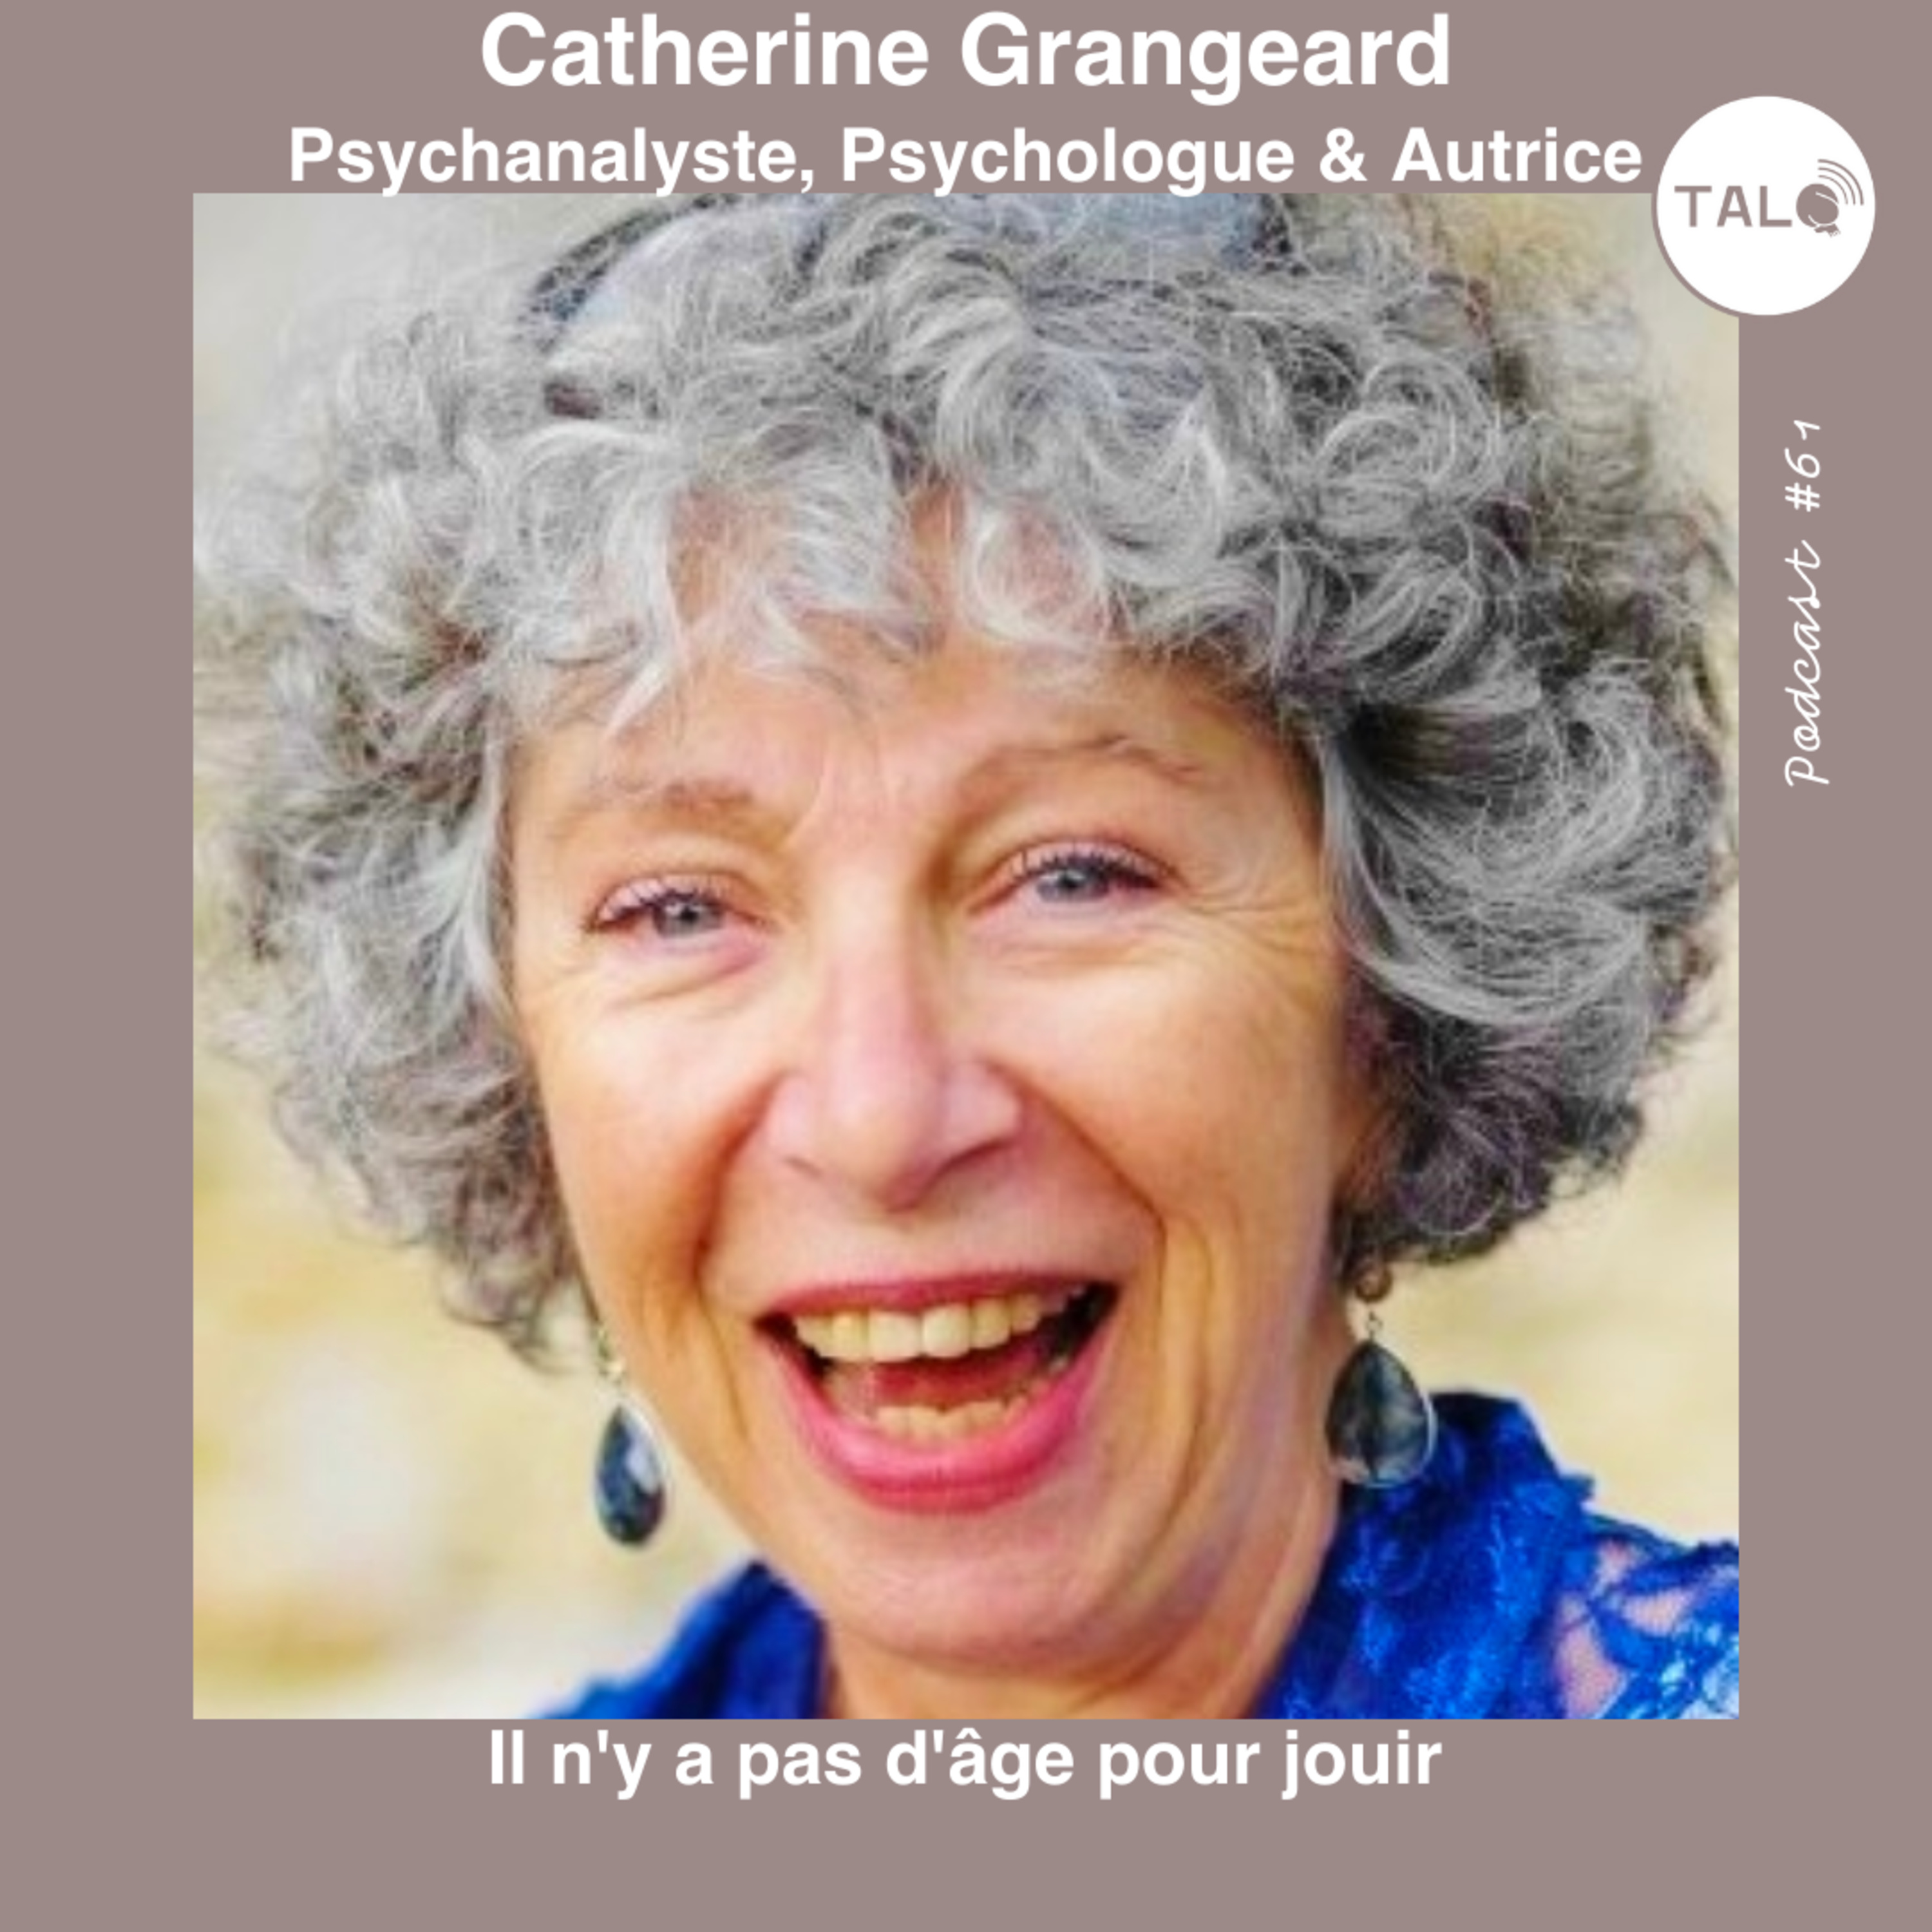 #61 - Il n’y a pas d’âge pour jouir - Catherine Grangeard